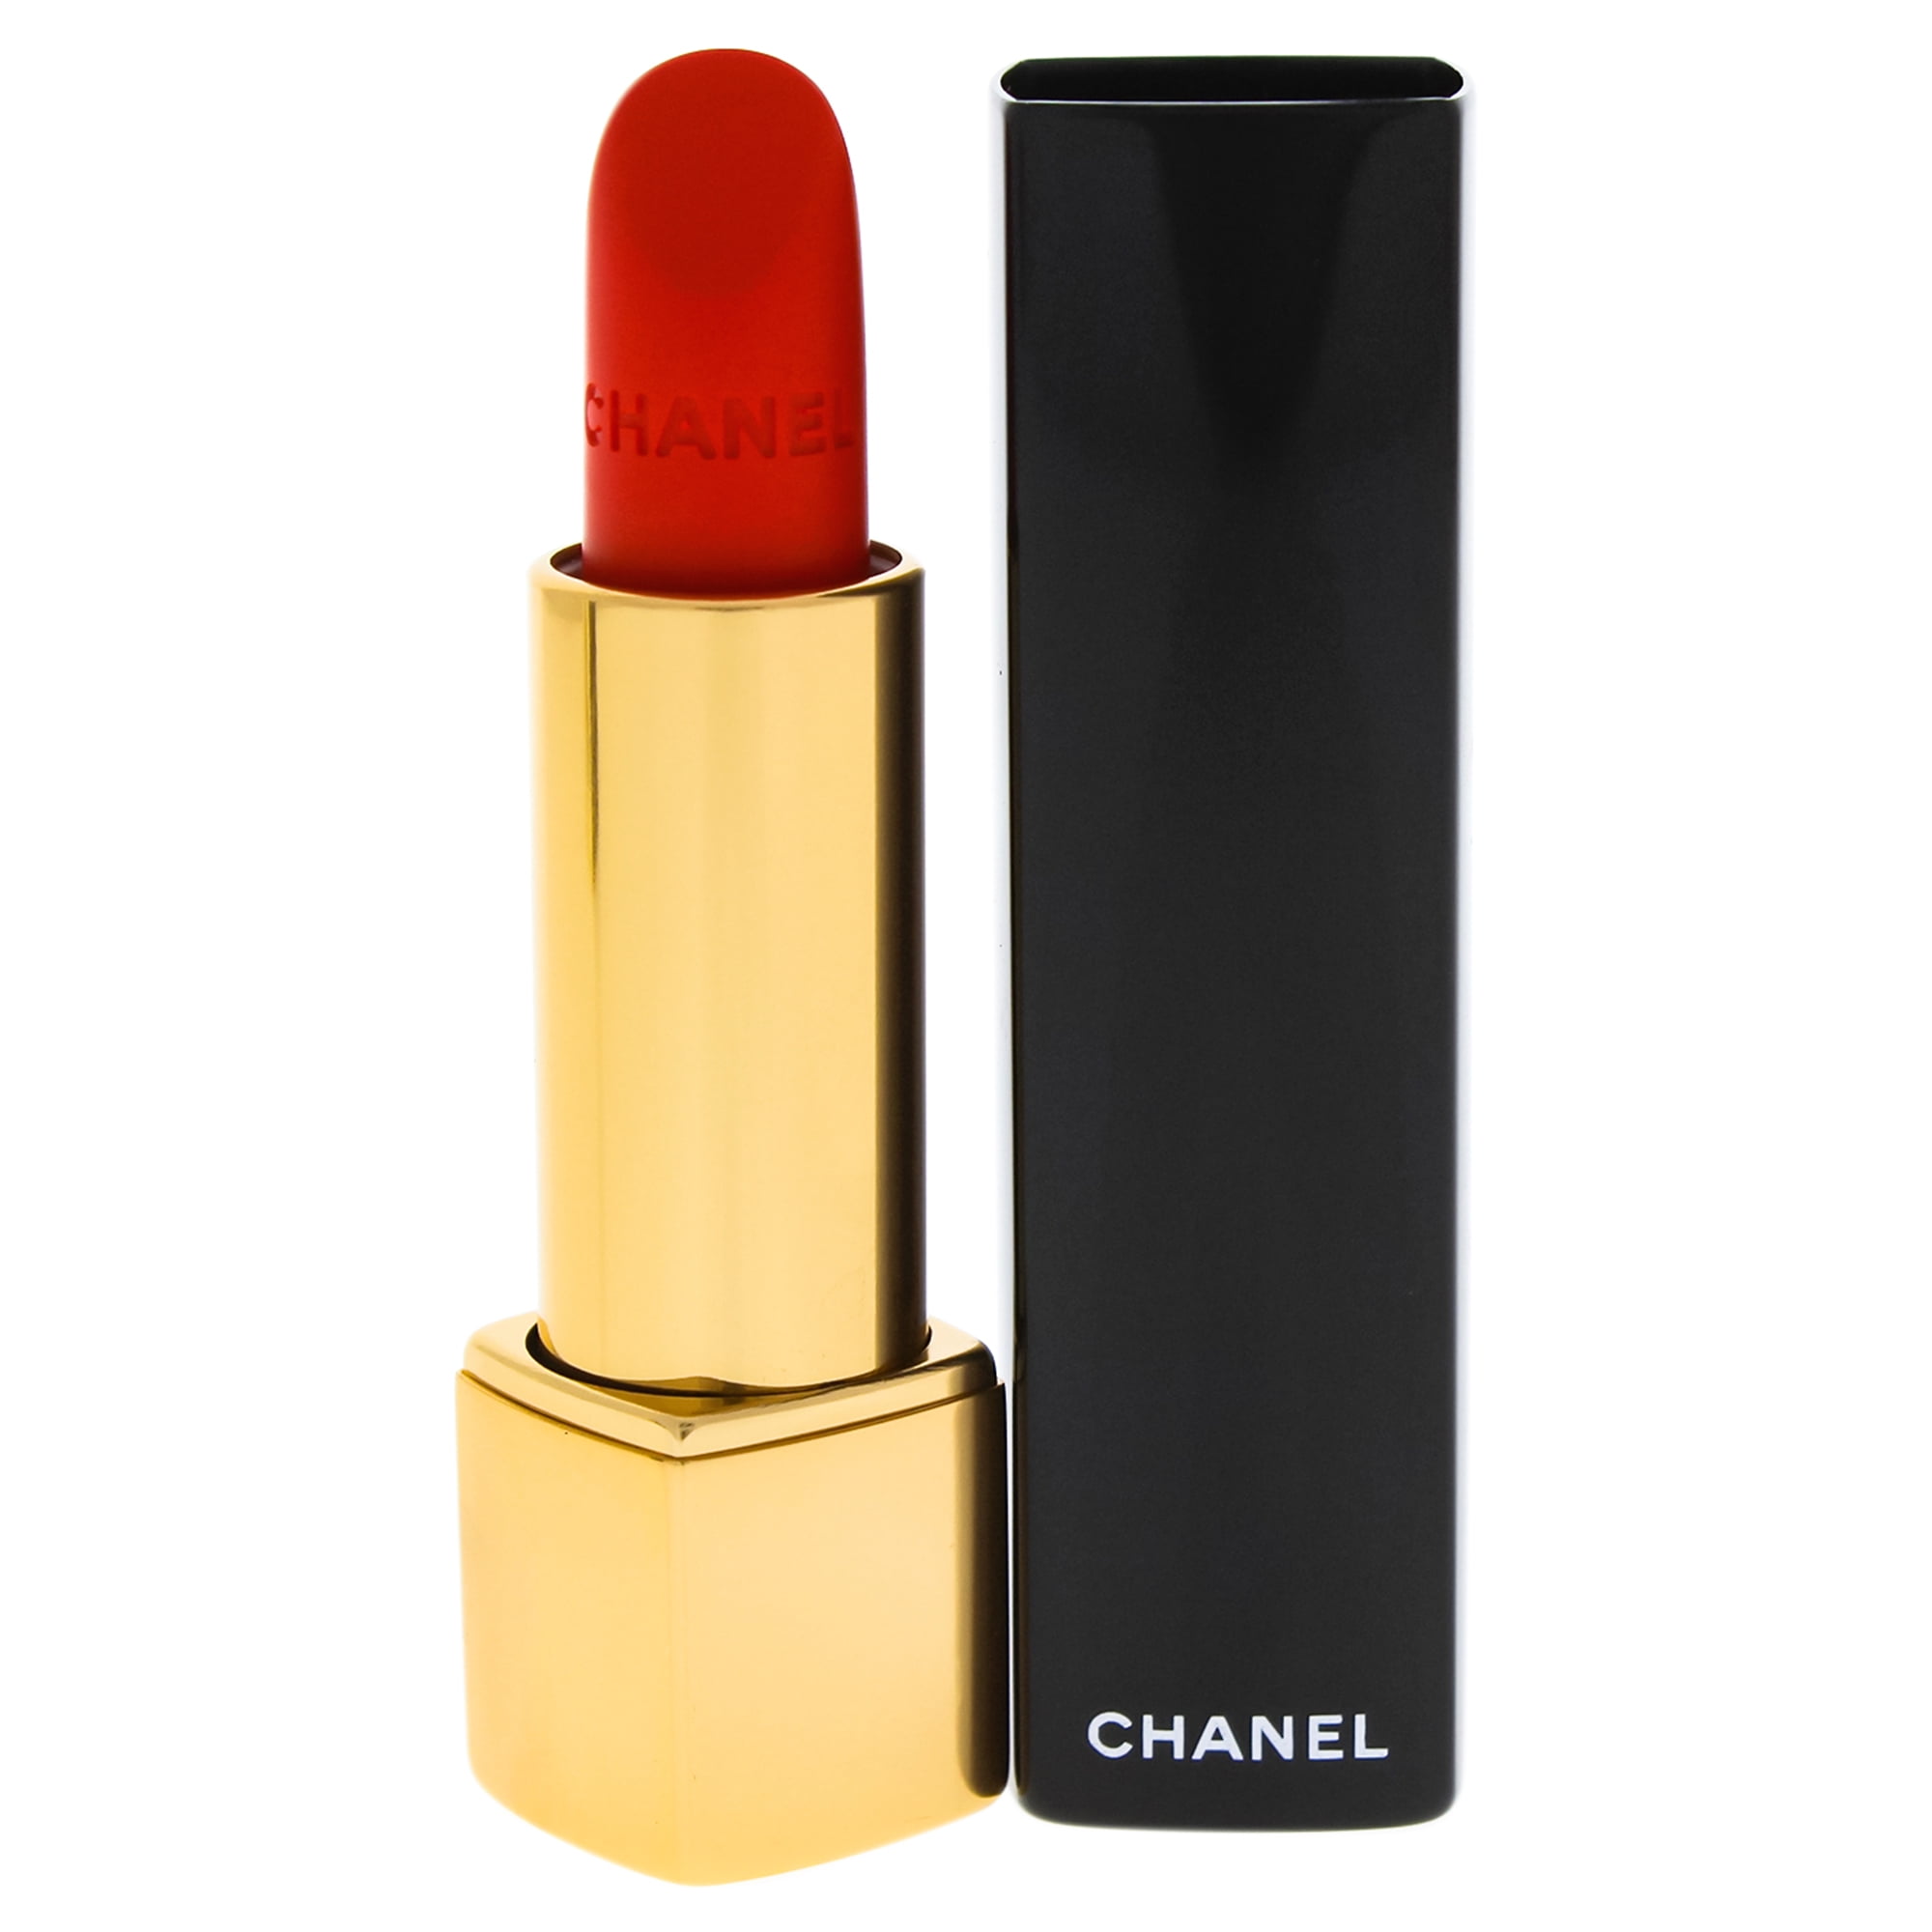 Rouge Allure Velvet Luminous Matte Lip Colour - 64 First Light by Chanel  for Women - 0.12 oz Lipstick 